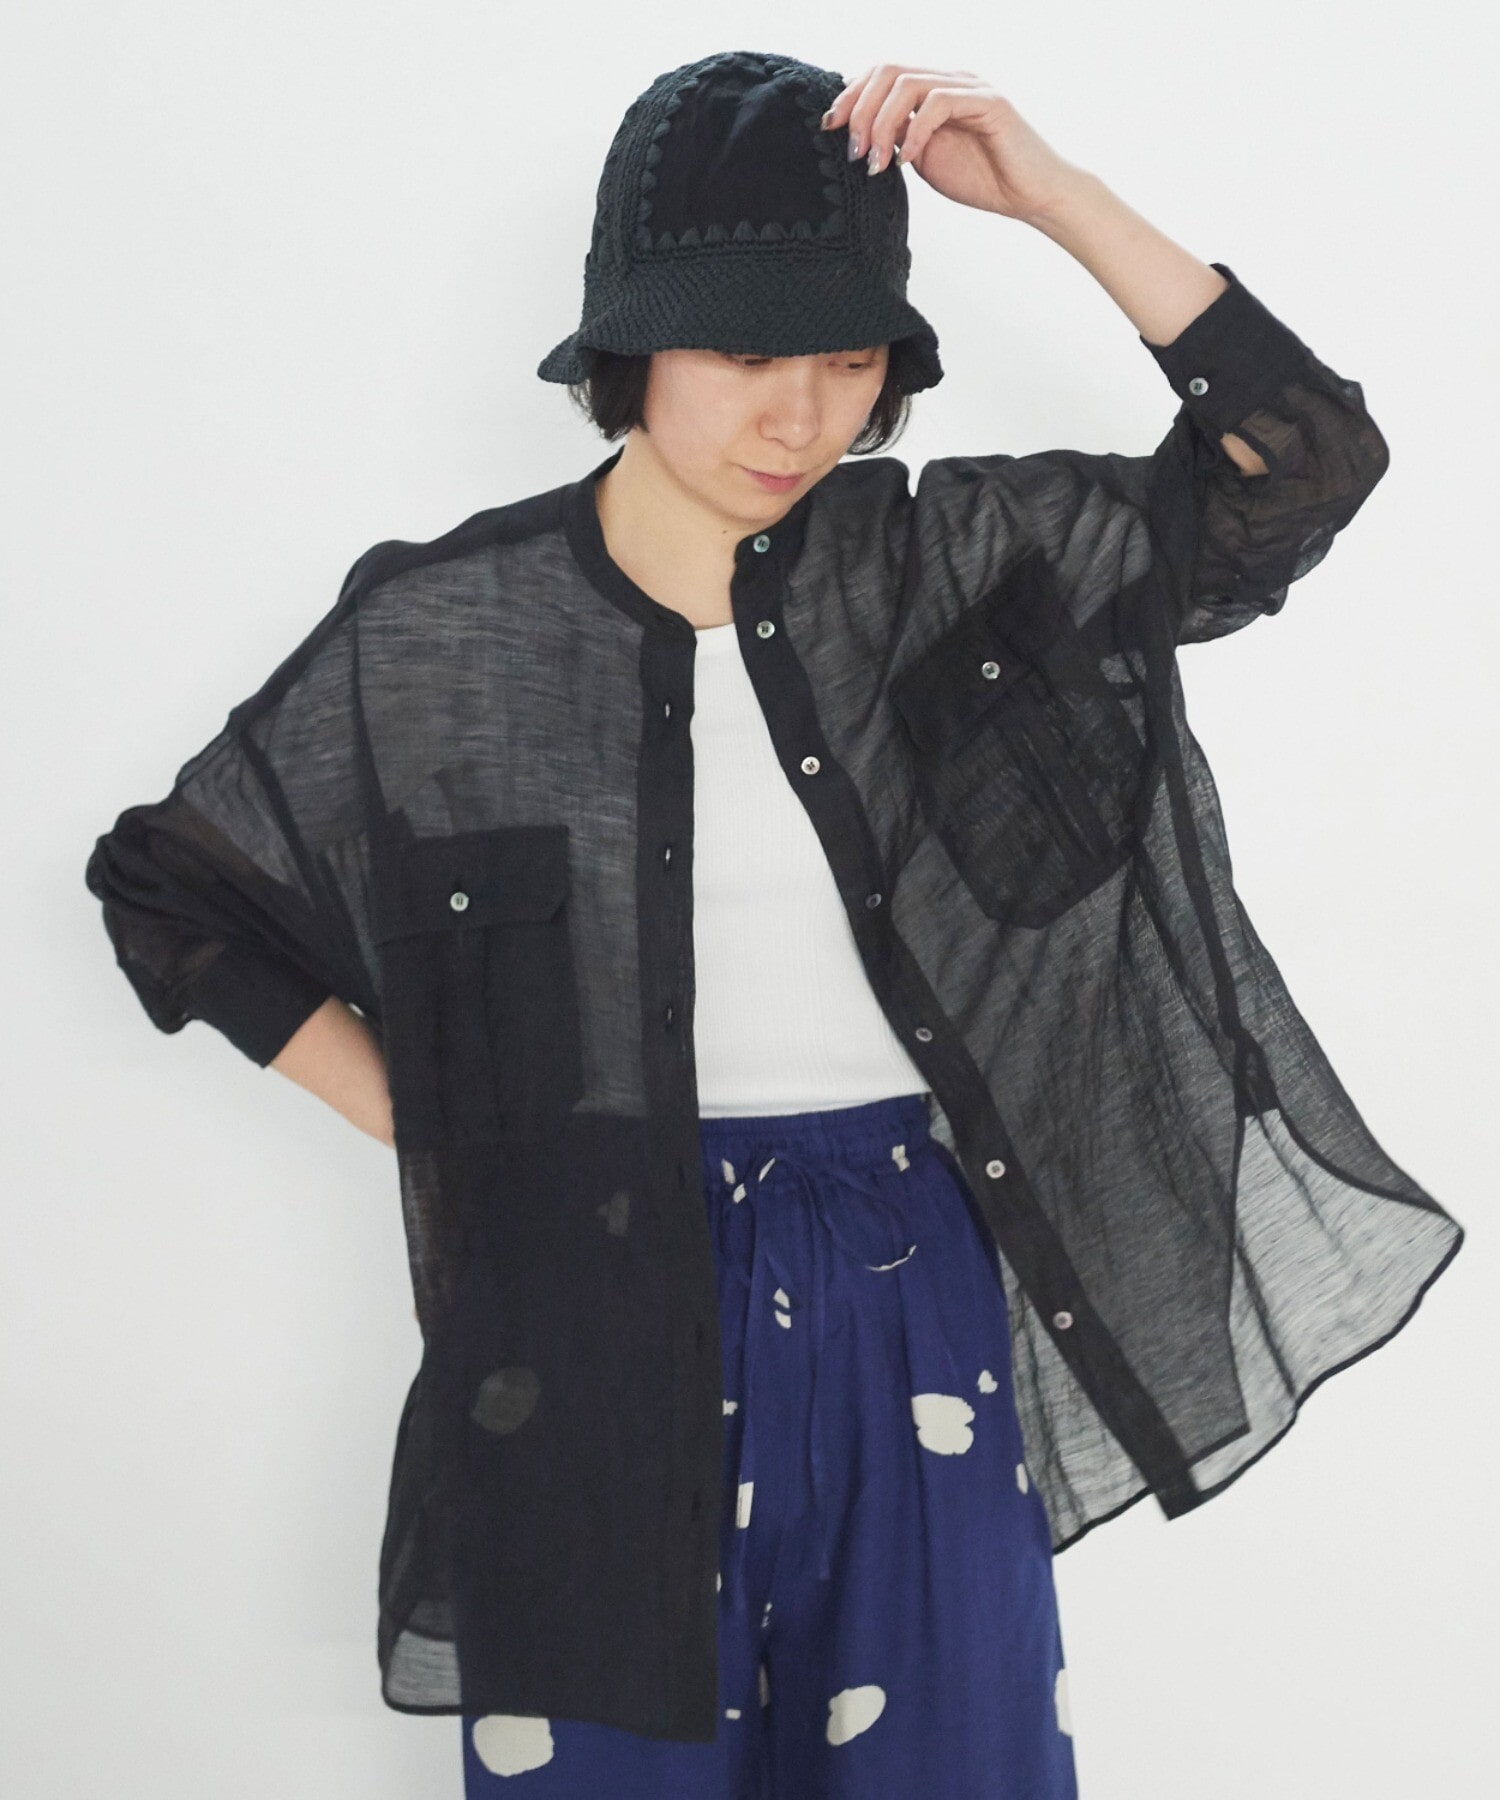 AMBIDEX Store ○カールマイヤーワイドシャツ(F カーキ): yuni